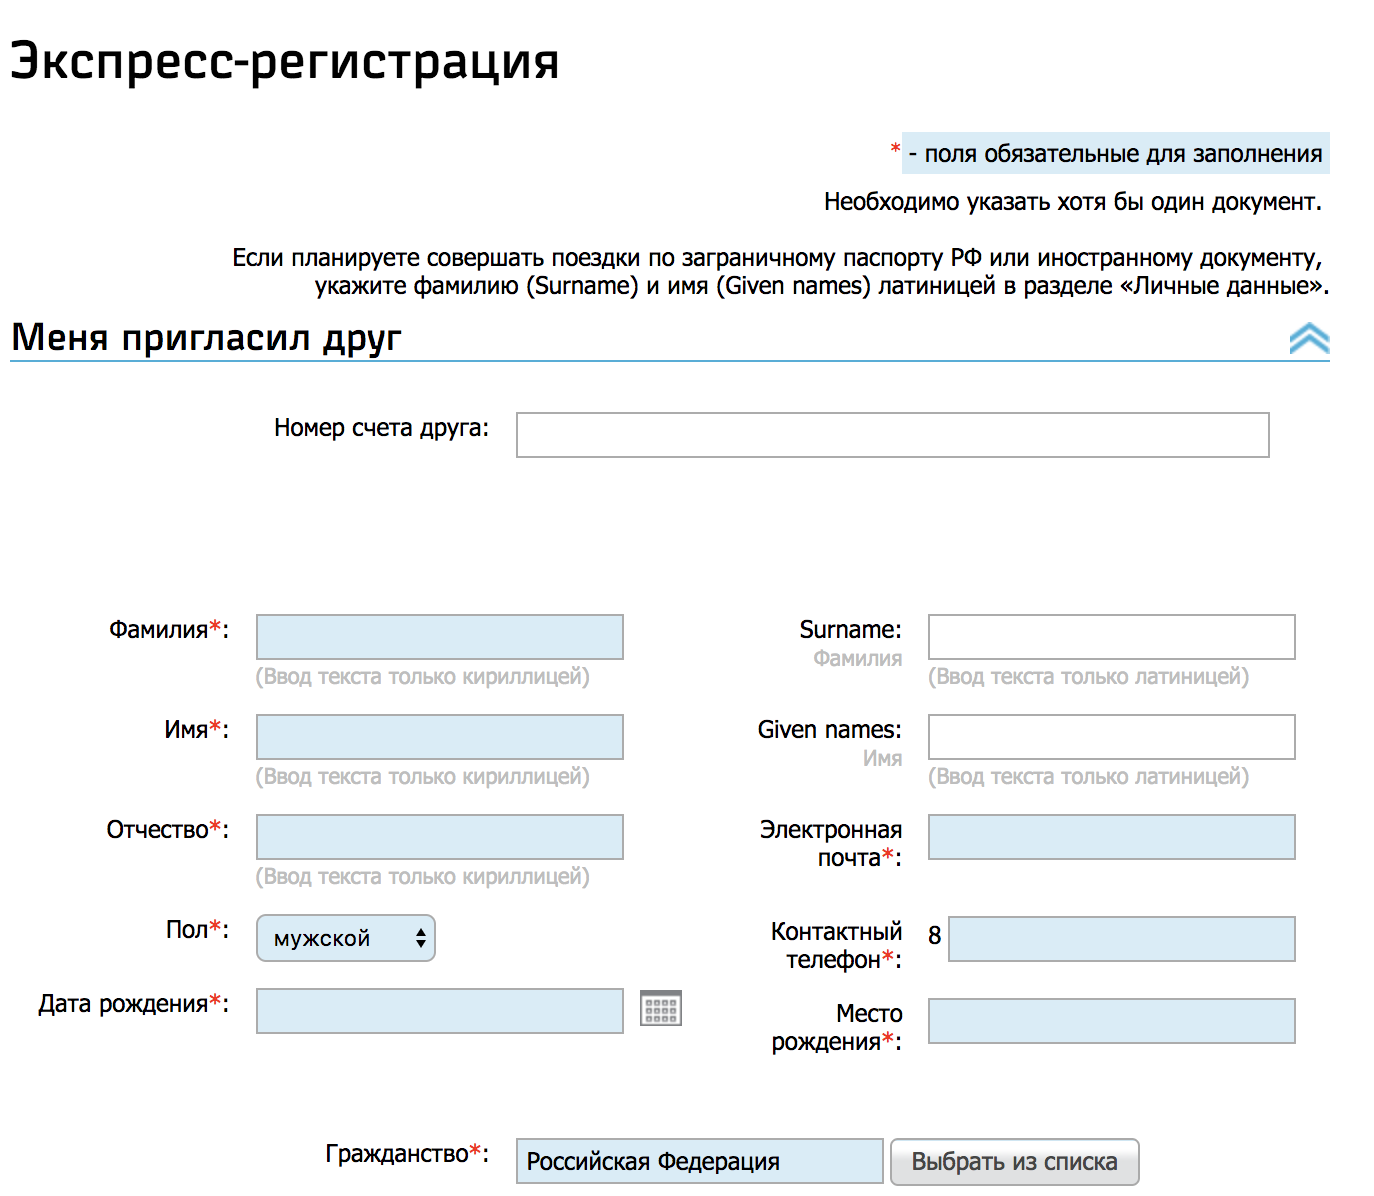 Экспресс-регистрация на сайте rzd-bonus.ru